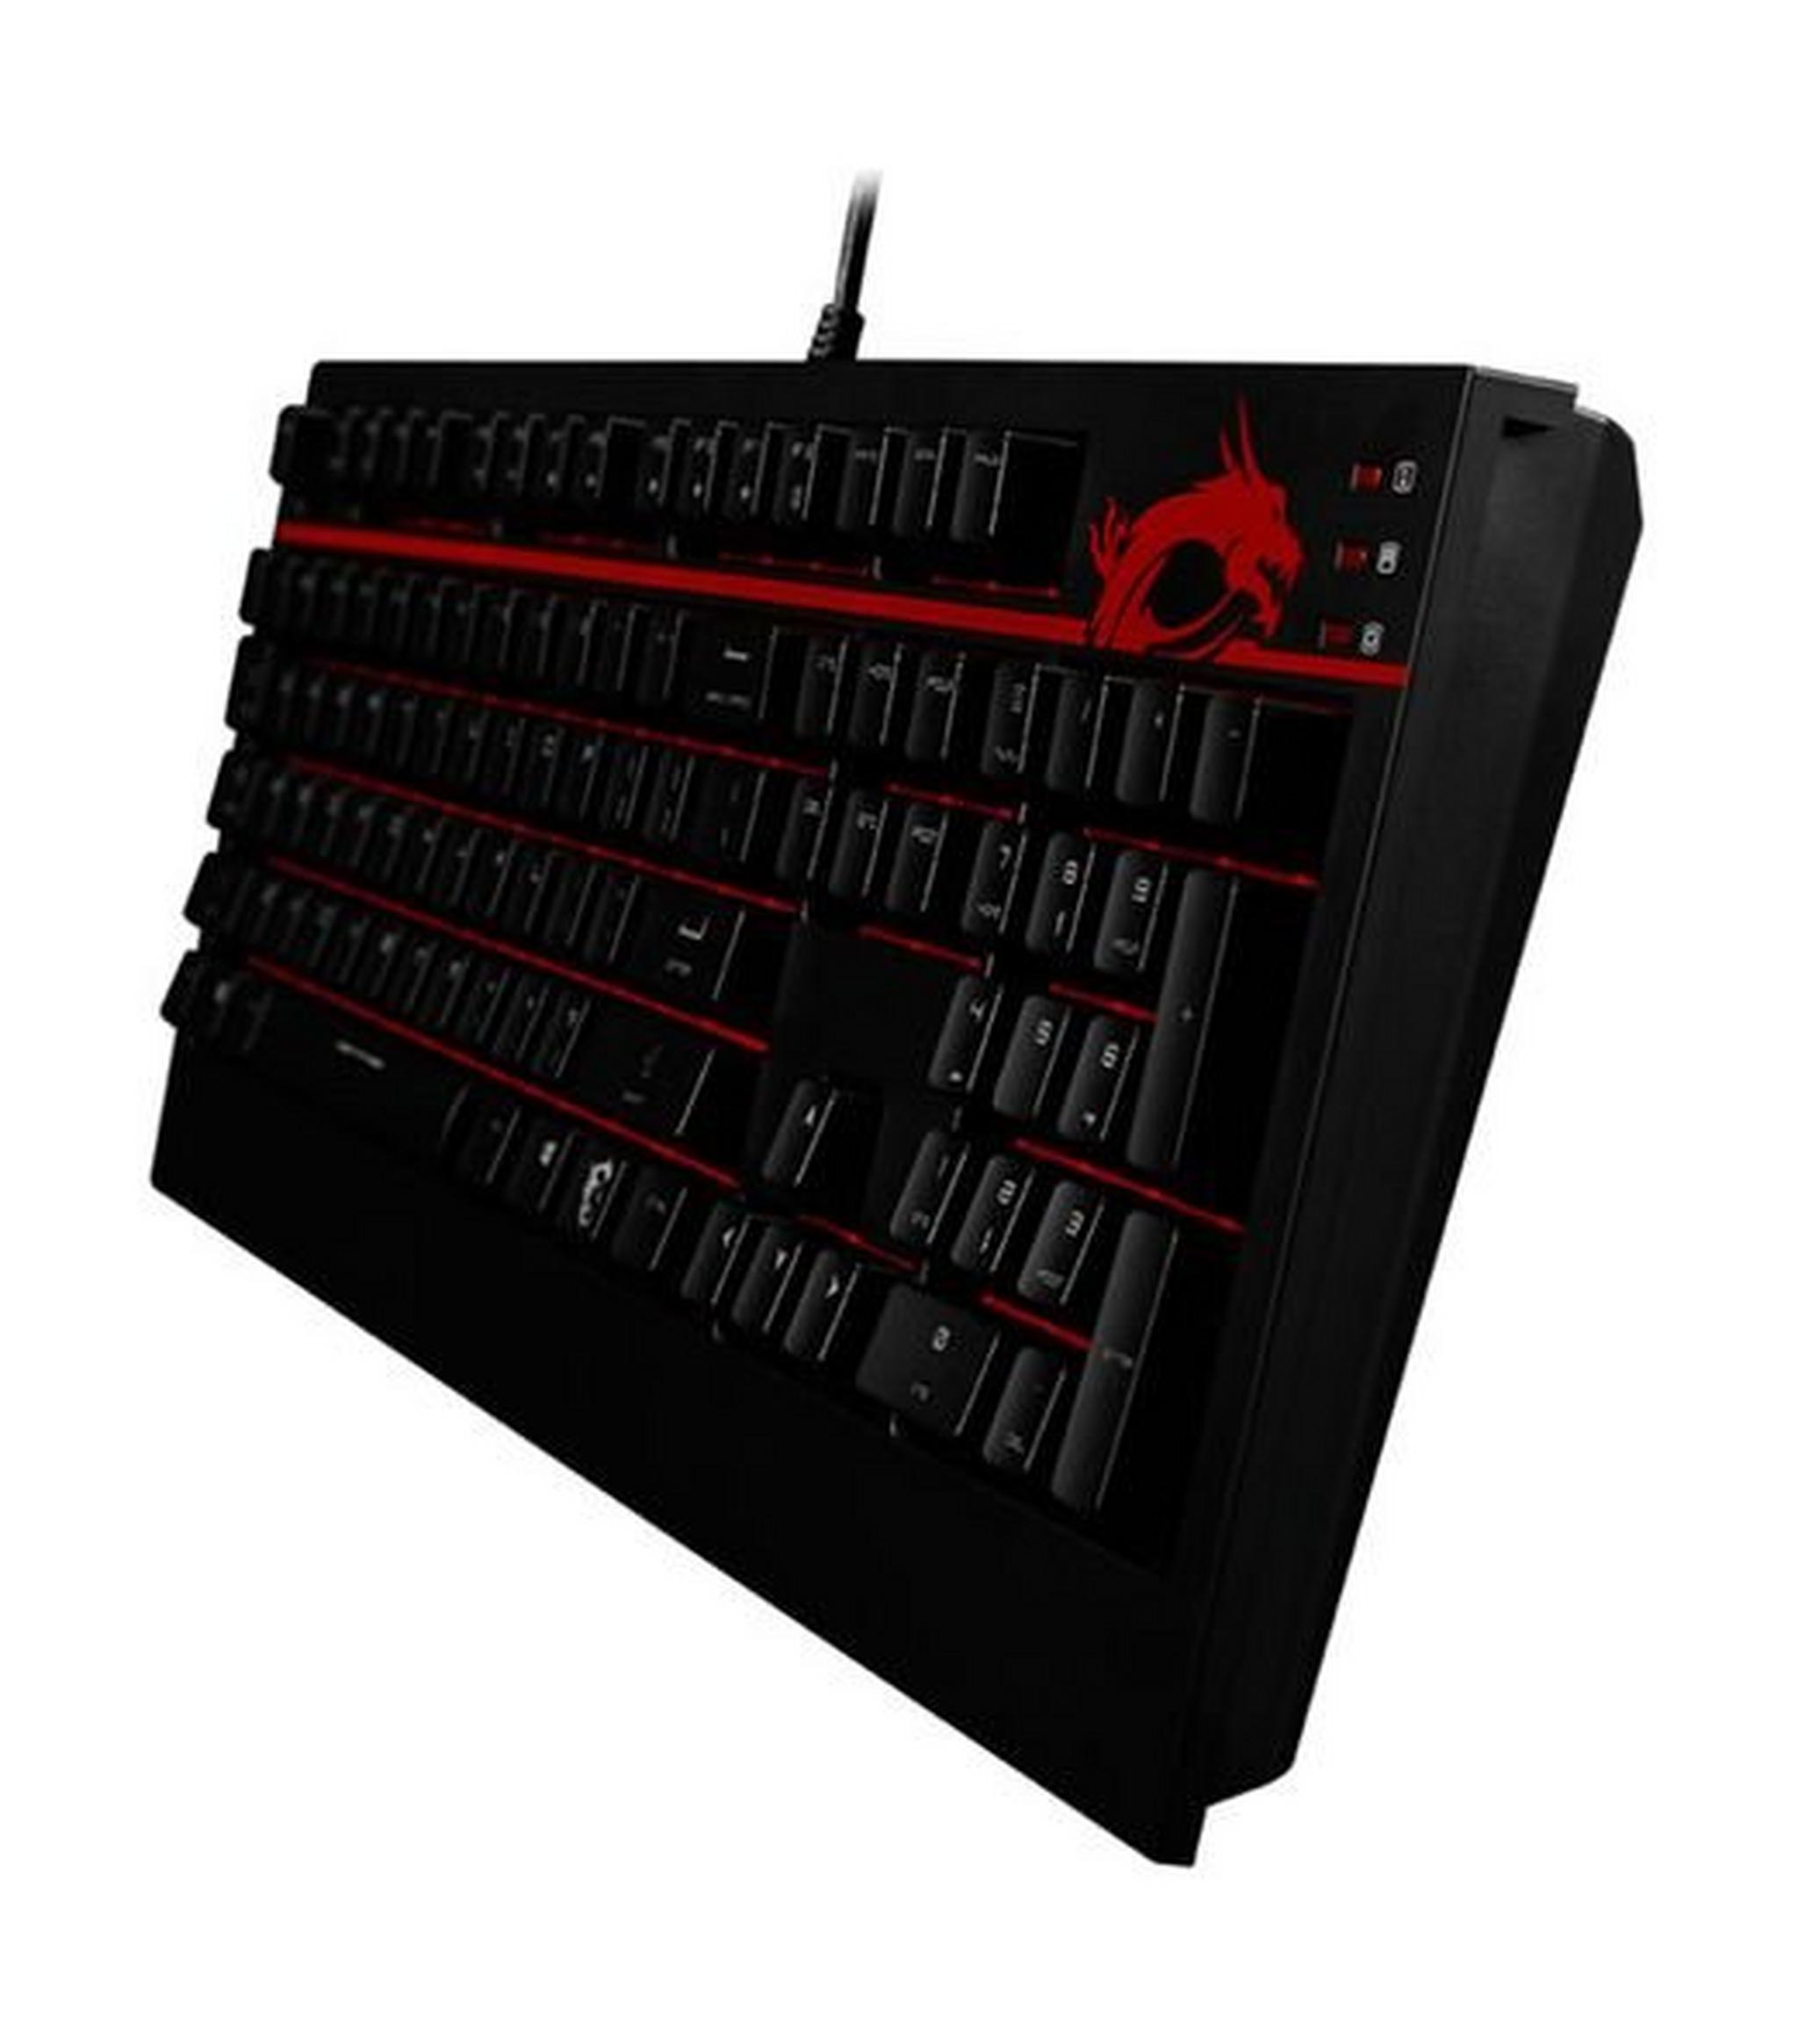 لوحة مفاتيح ألعاب ميكانيكية مع إضاءة خلفية من إم إس آي - أسود (GK-701)